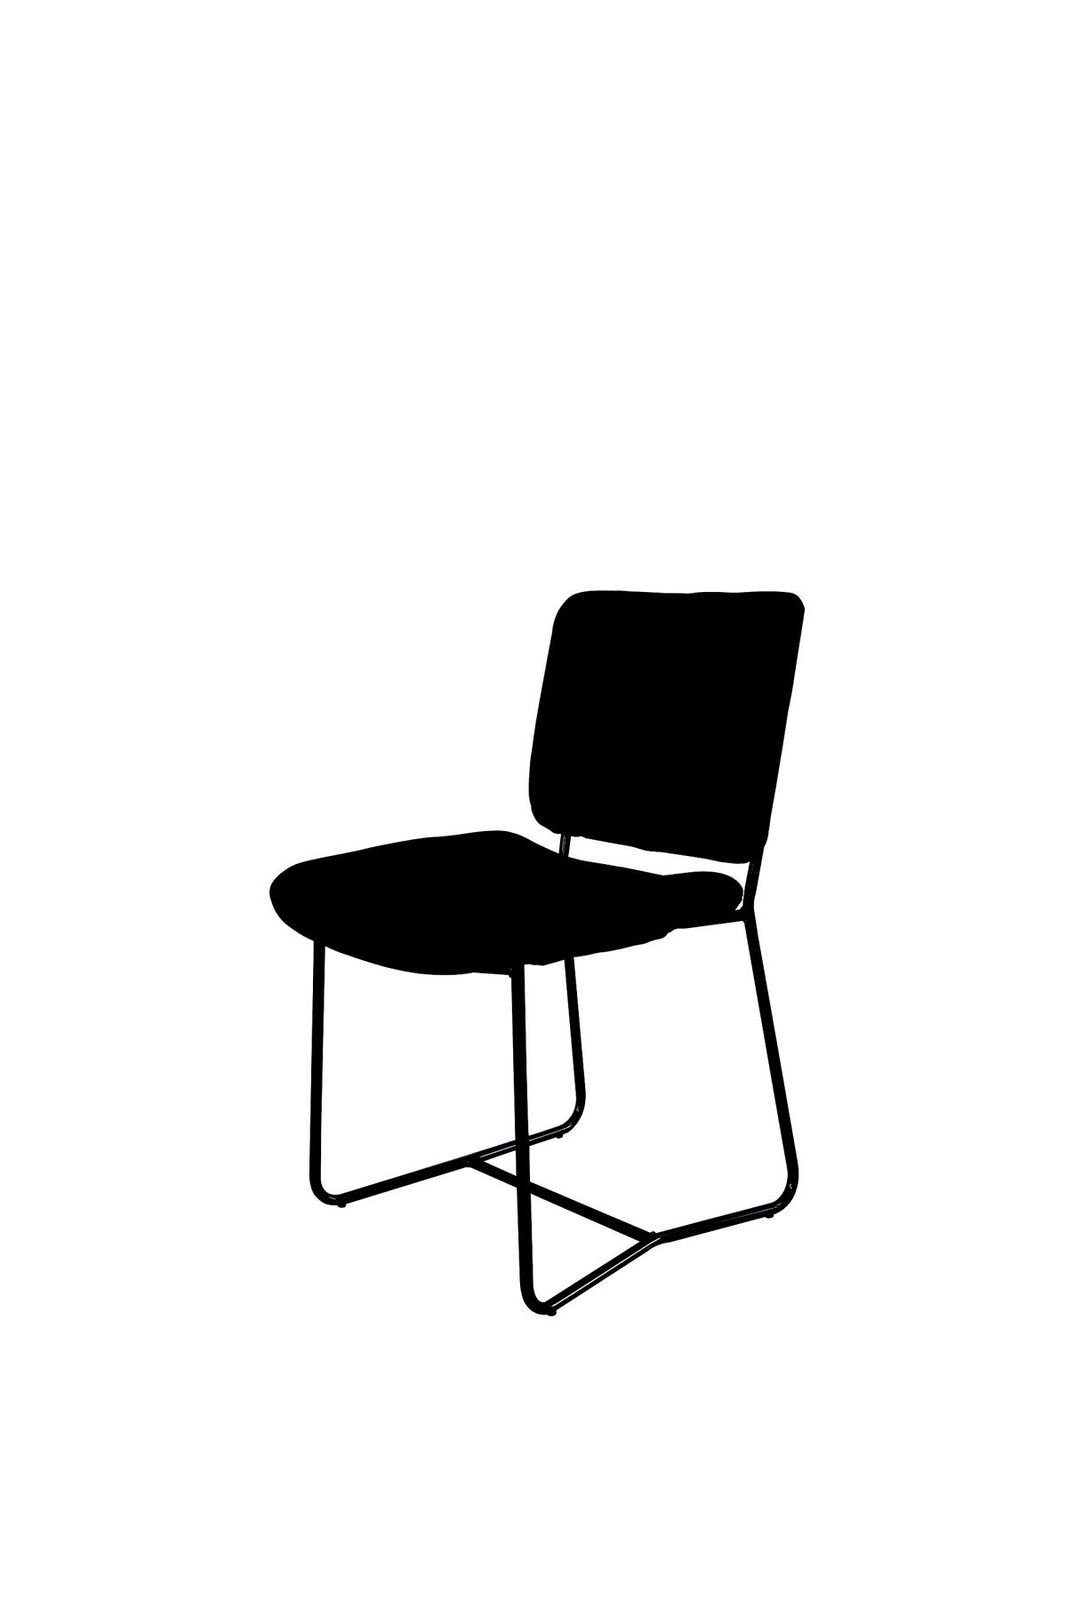 JVmoebel Stuhl Stuhl Kinderzimmer Lounge Kindermöbel Lehnstuhl Polsterstuhl Textil, Made In Euroepe